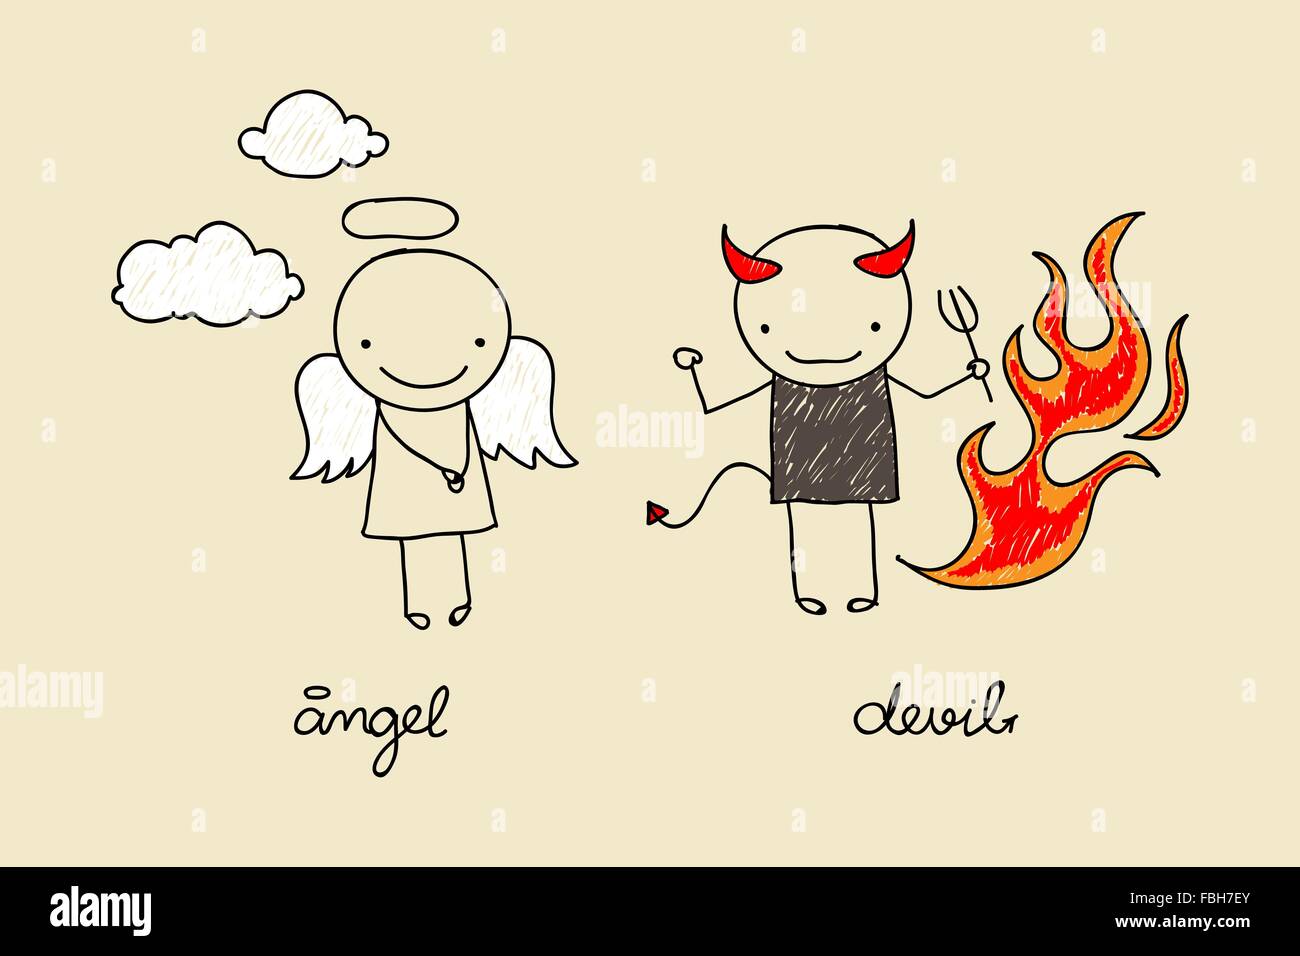 Dessin enfantin de cute Devil and Angel avec des flammes et des nuages Illustration de Vecteur